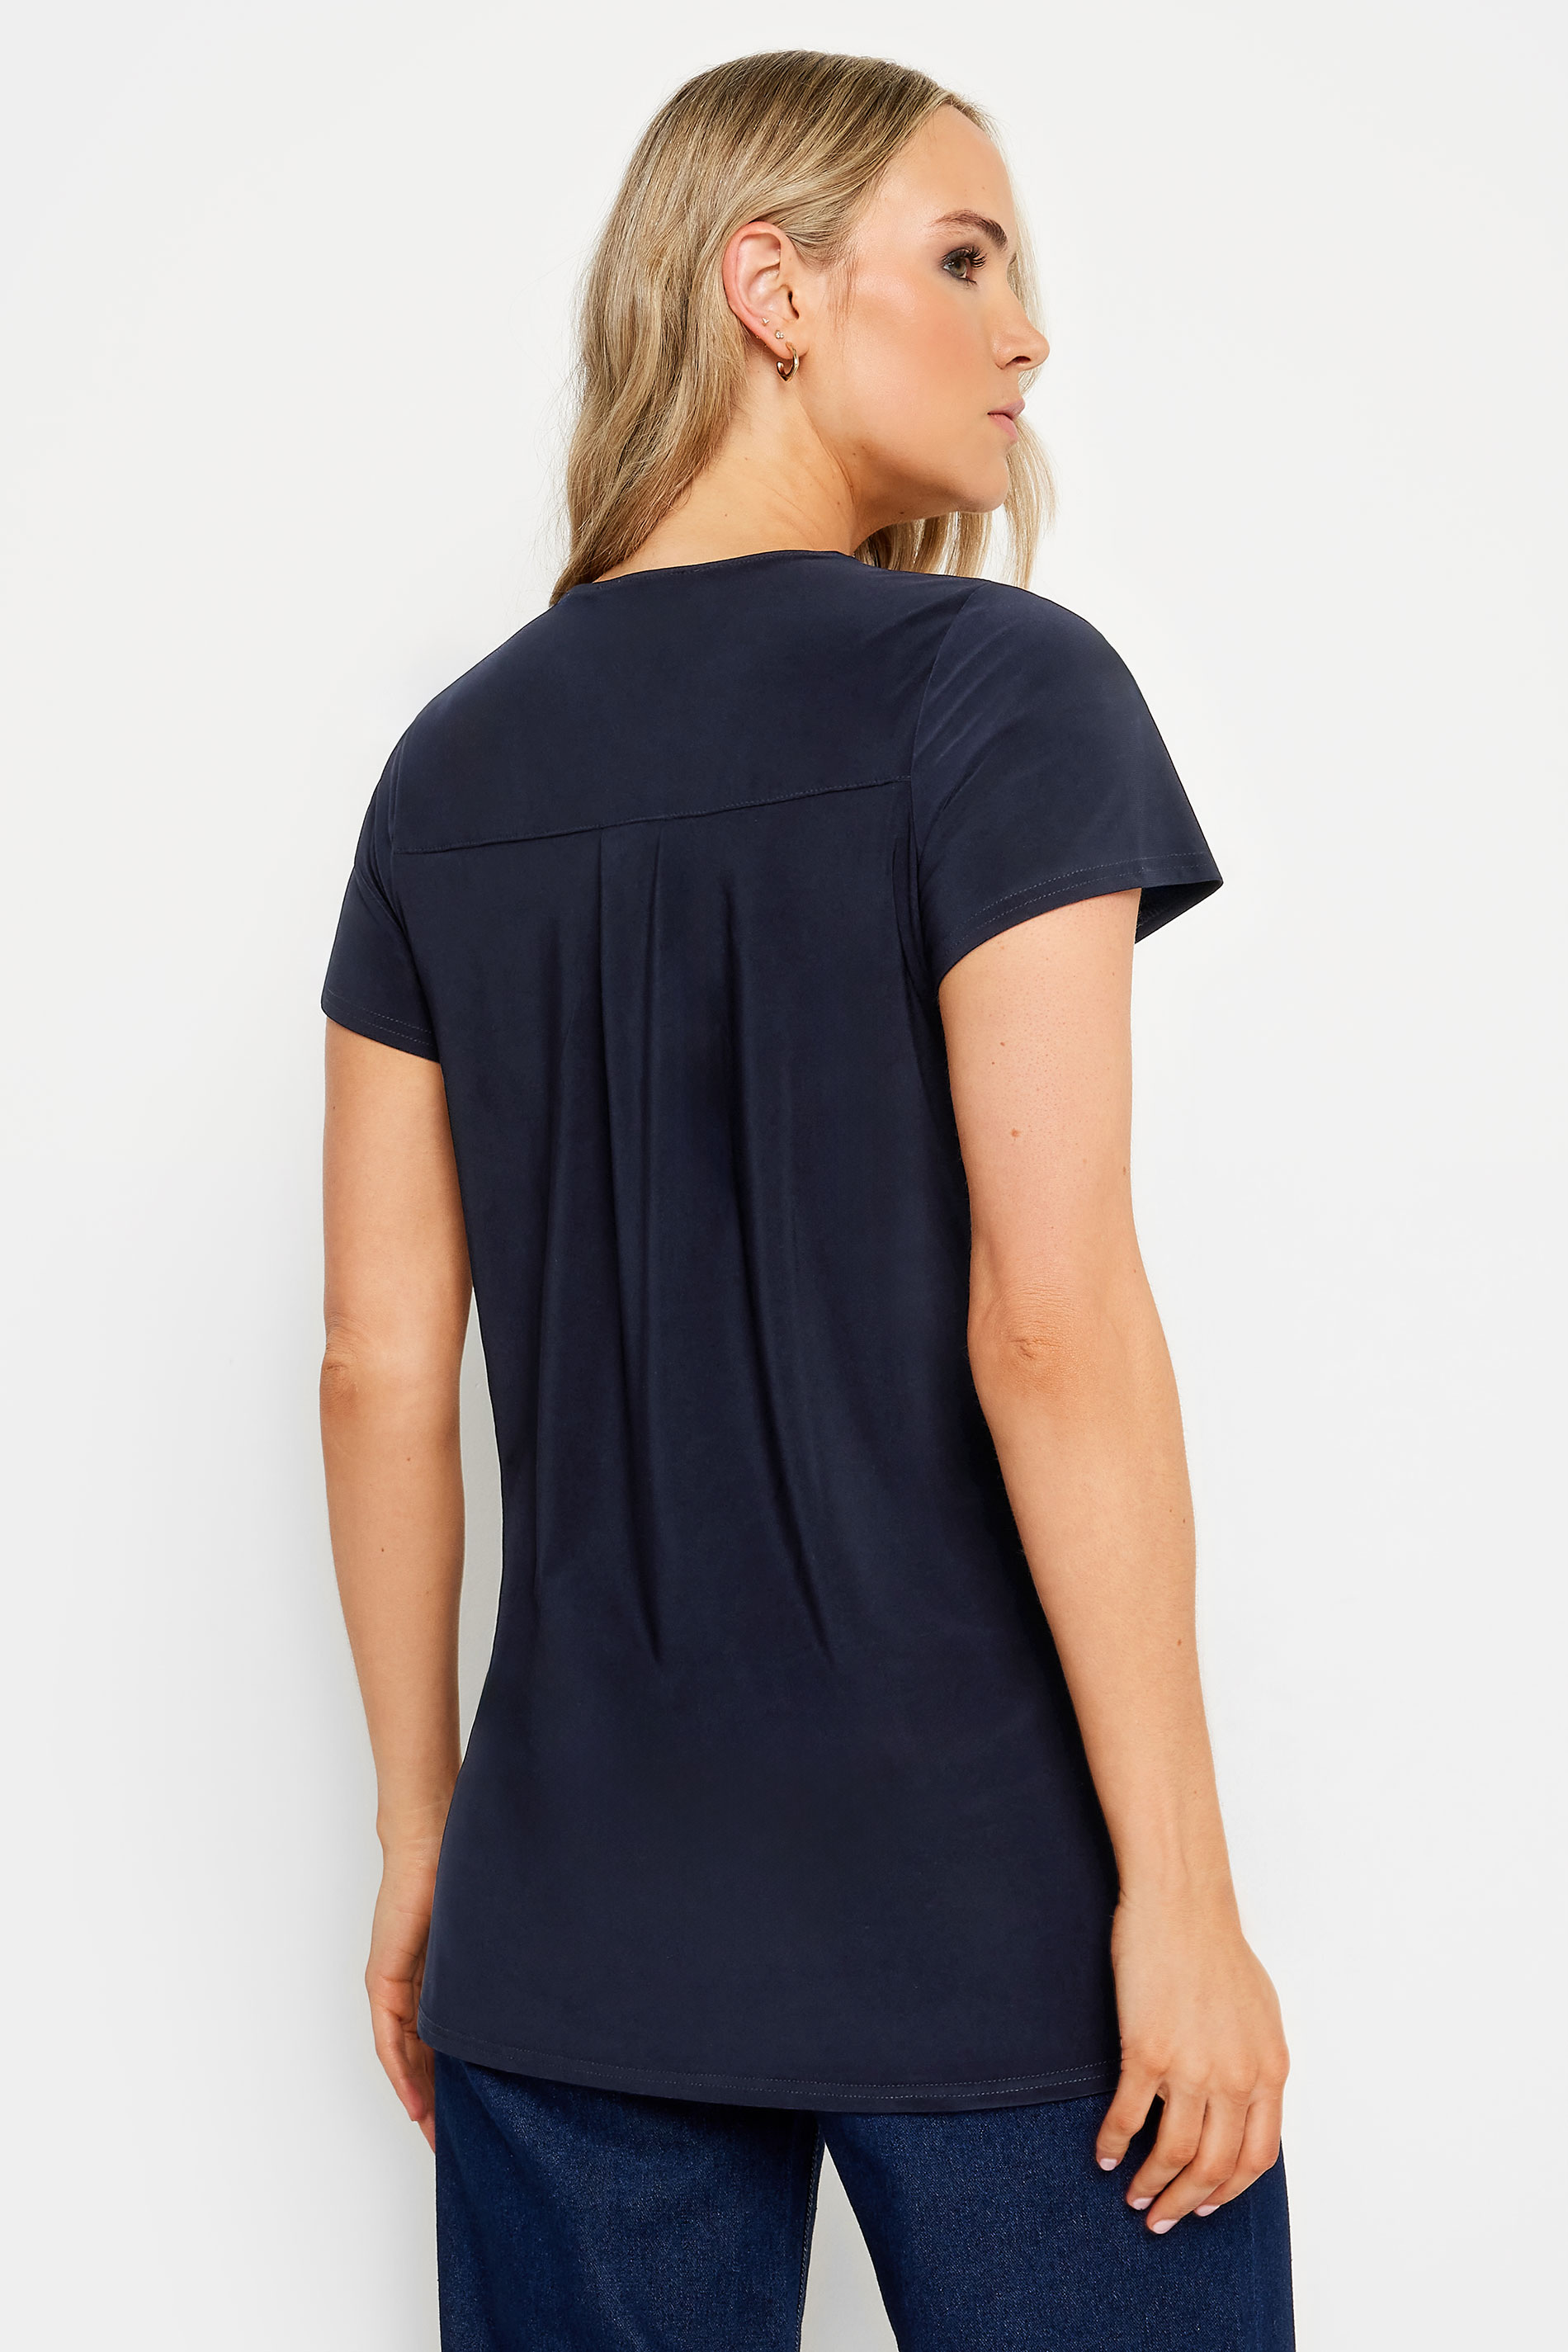 LTS Tall Women's Navy Blue Zip Detail T-Shirt | Long Tall Sally 3